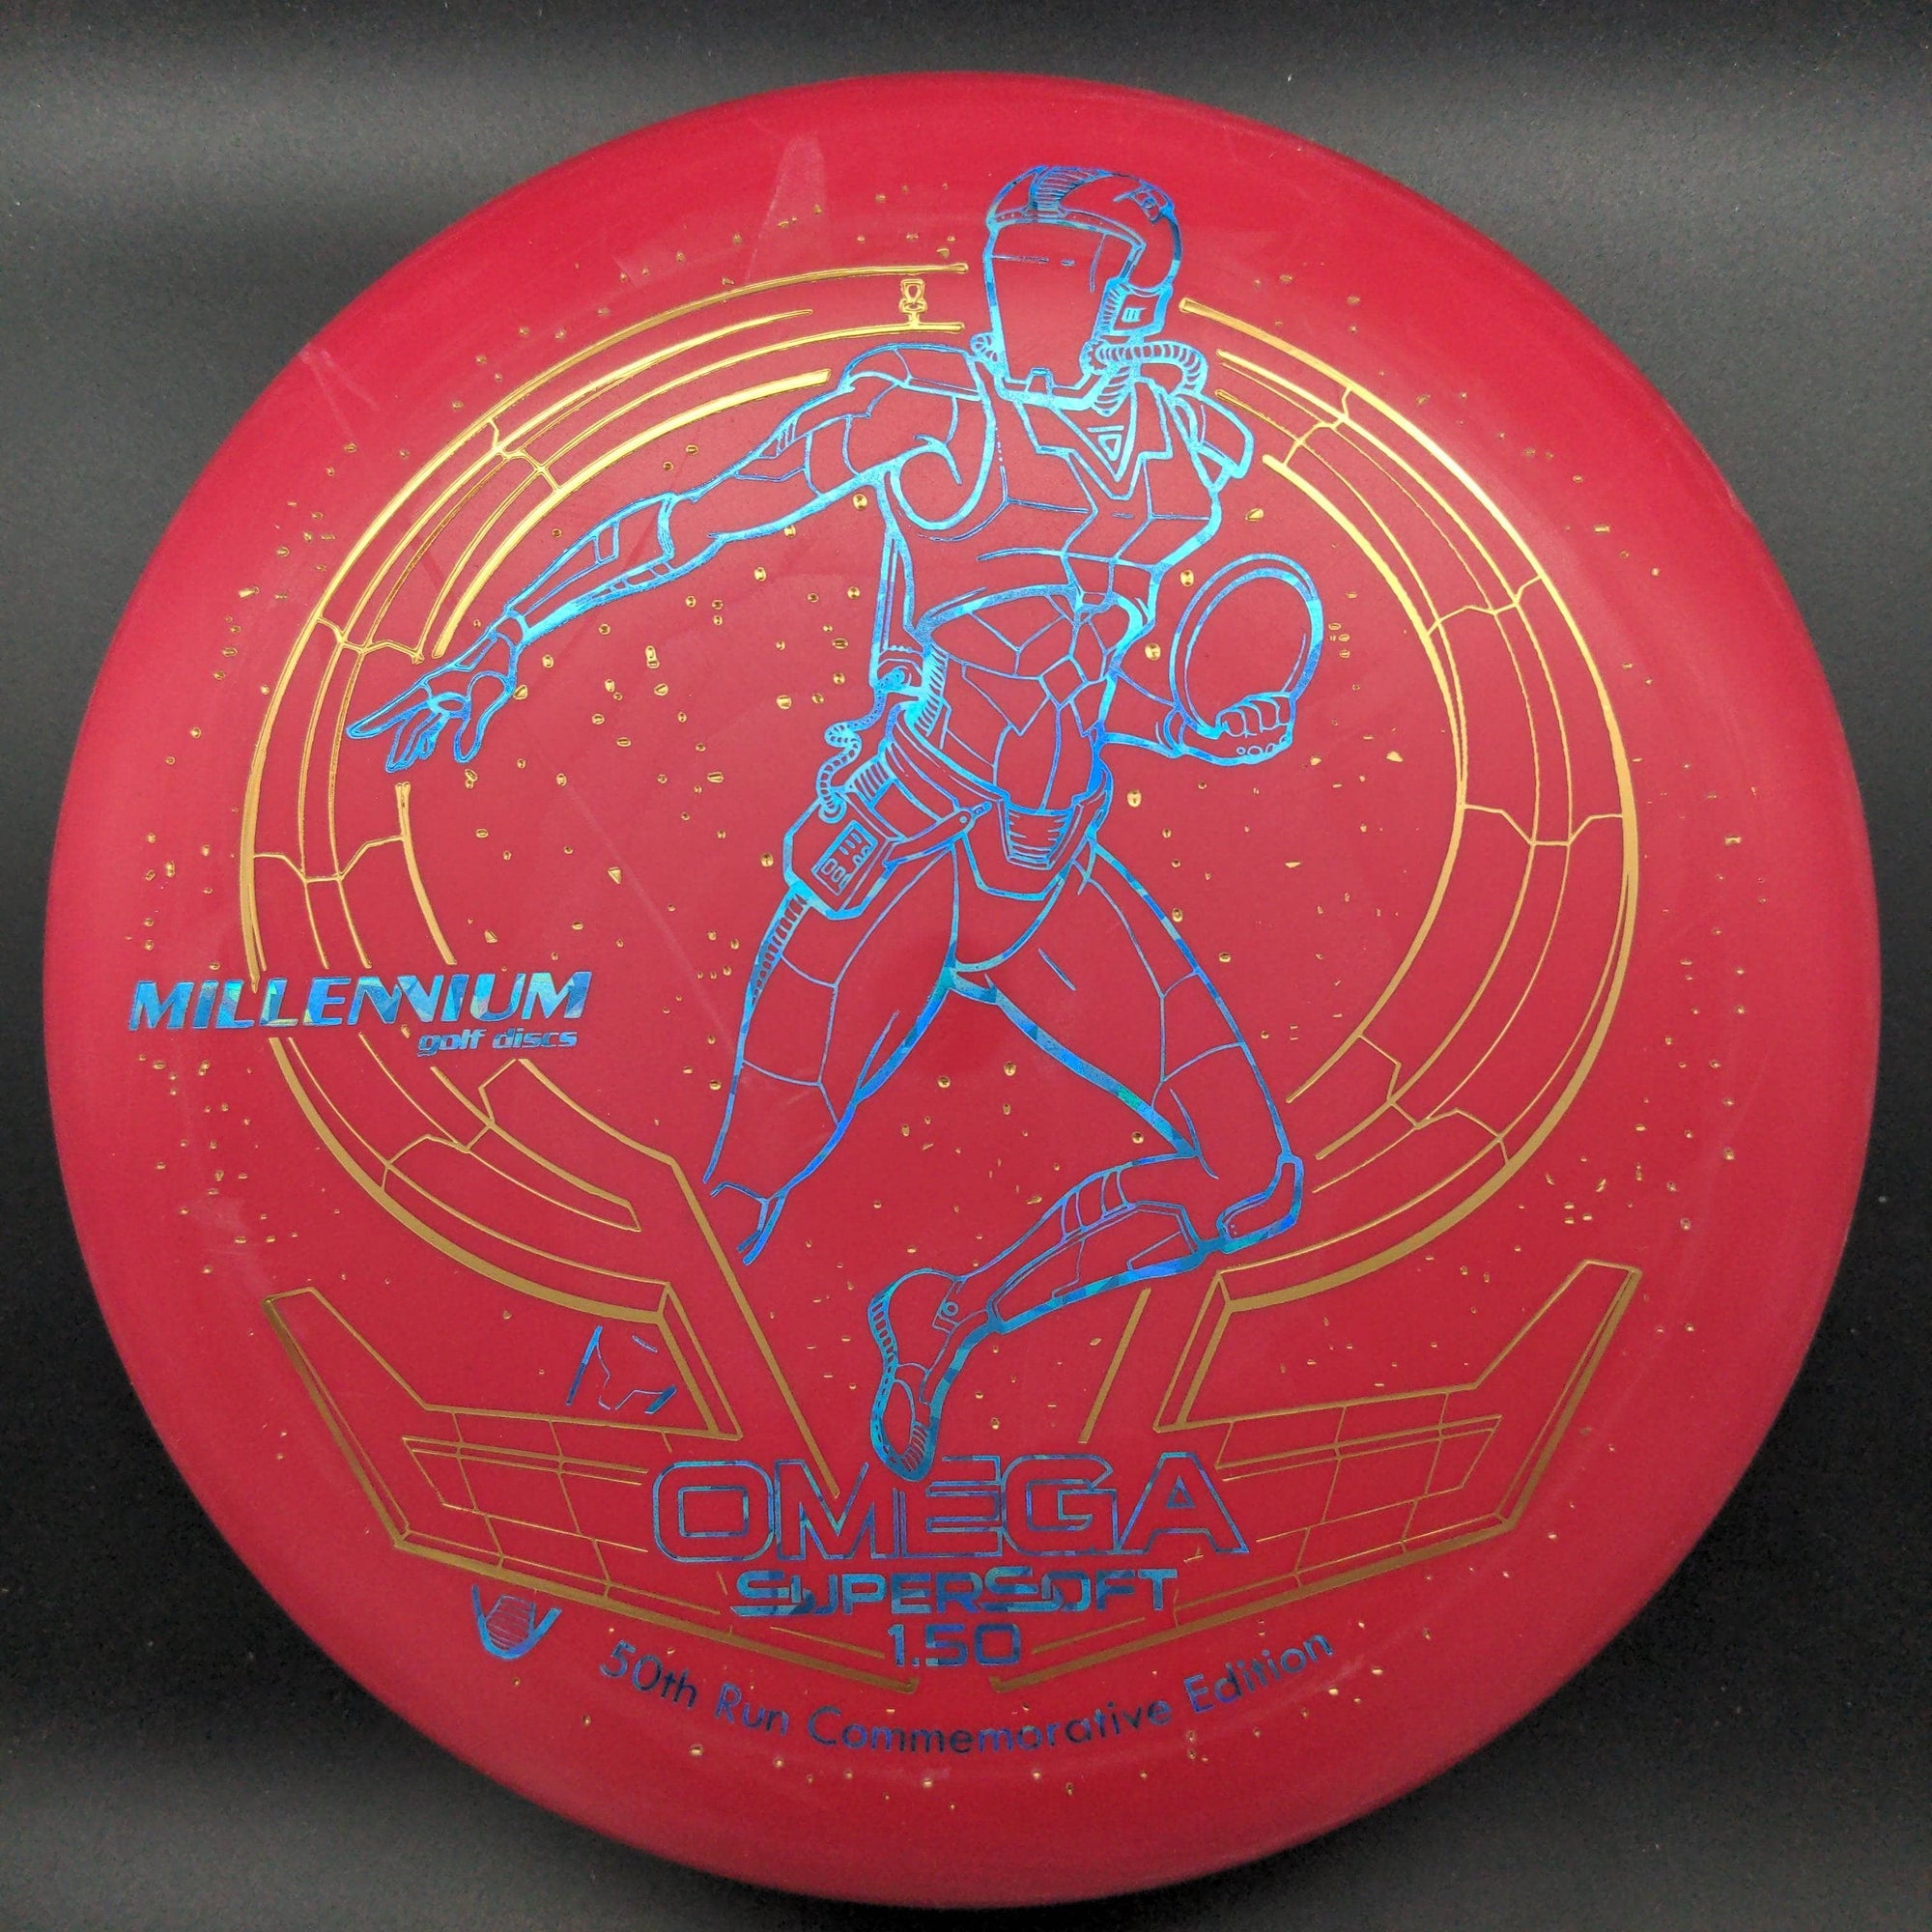 Millennium Discs Putter Red Blue Shatter Stamp 175g Omega - Super Soft